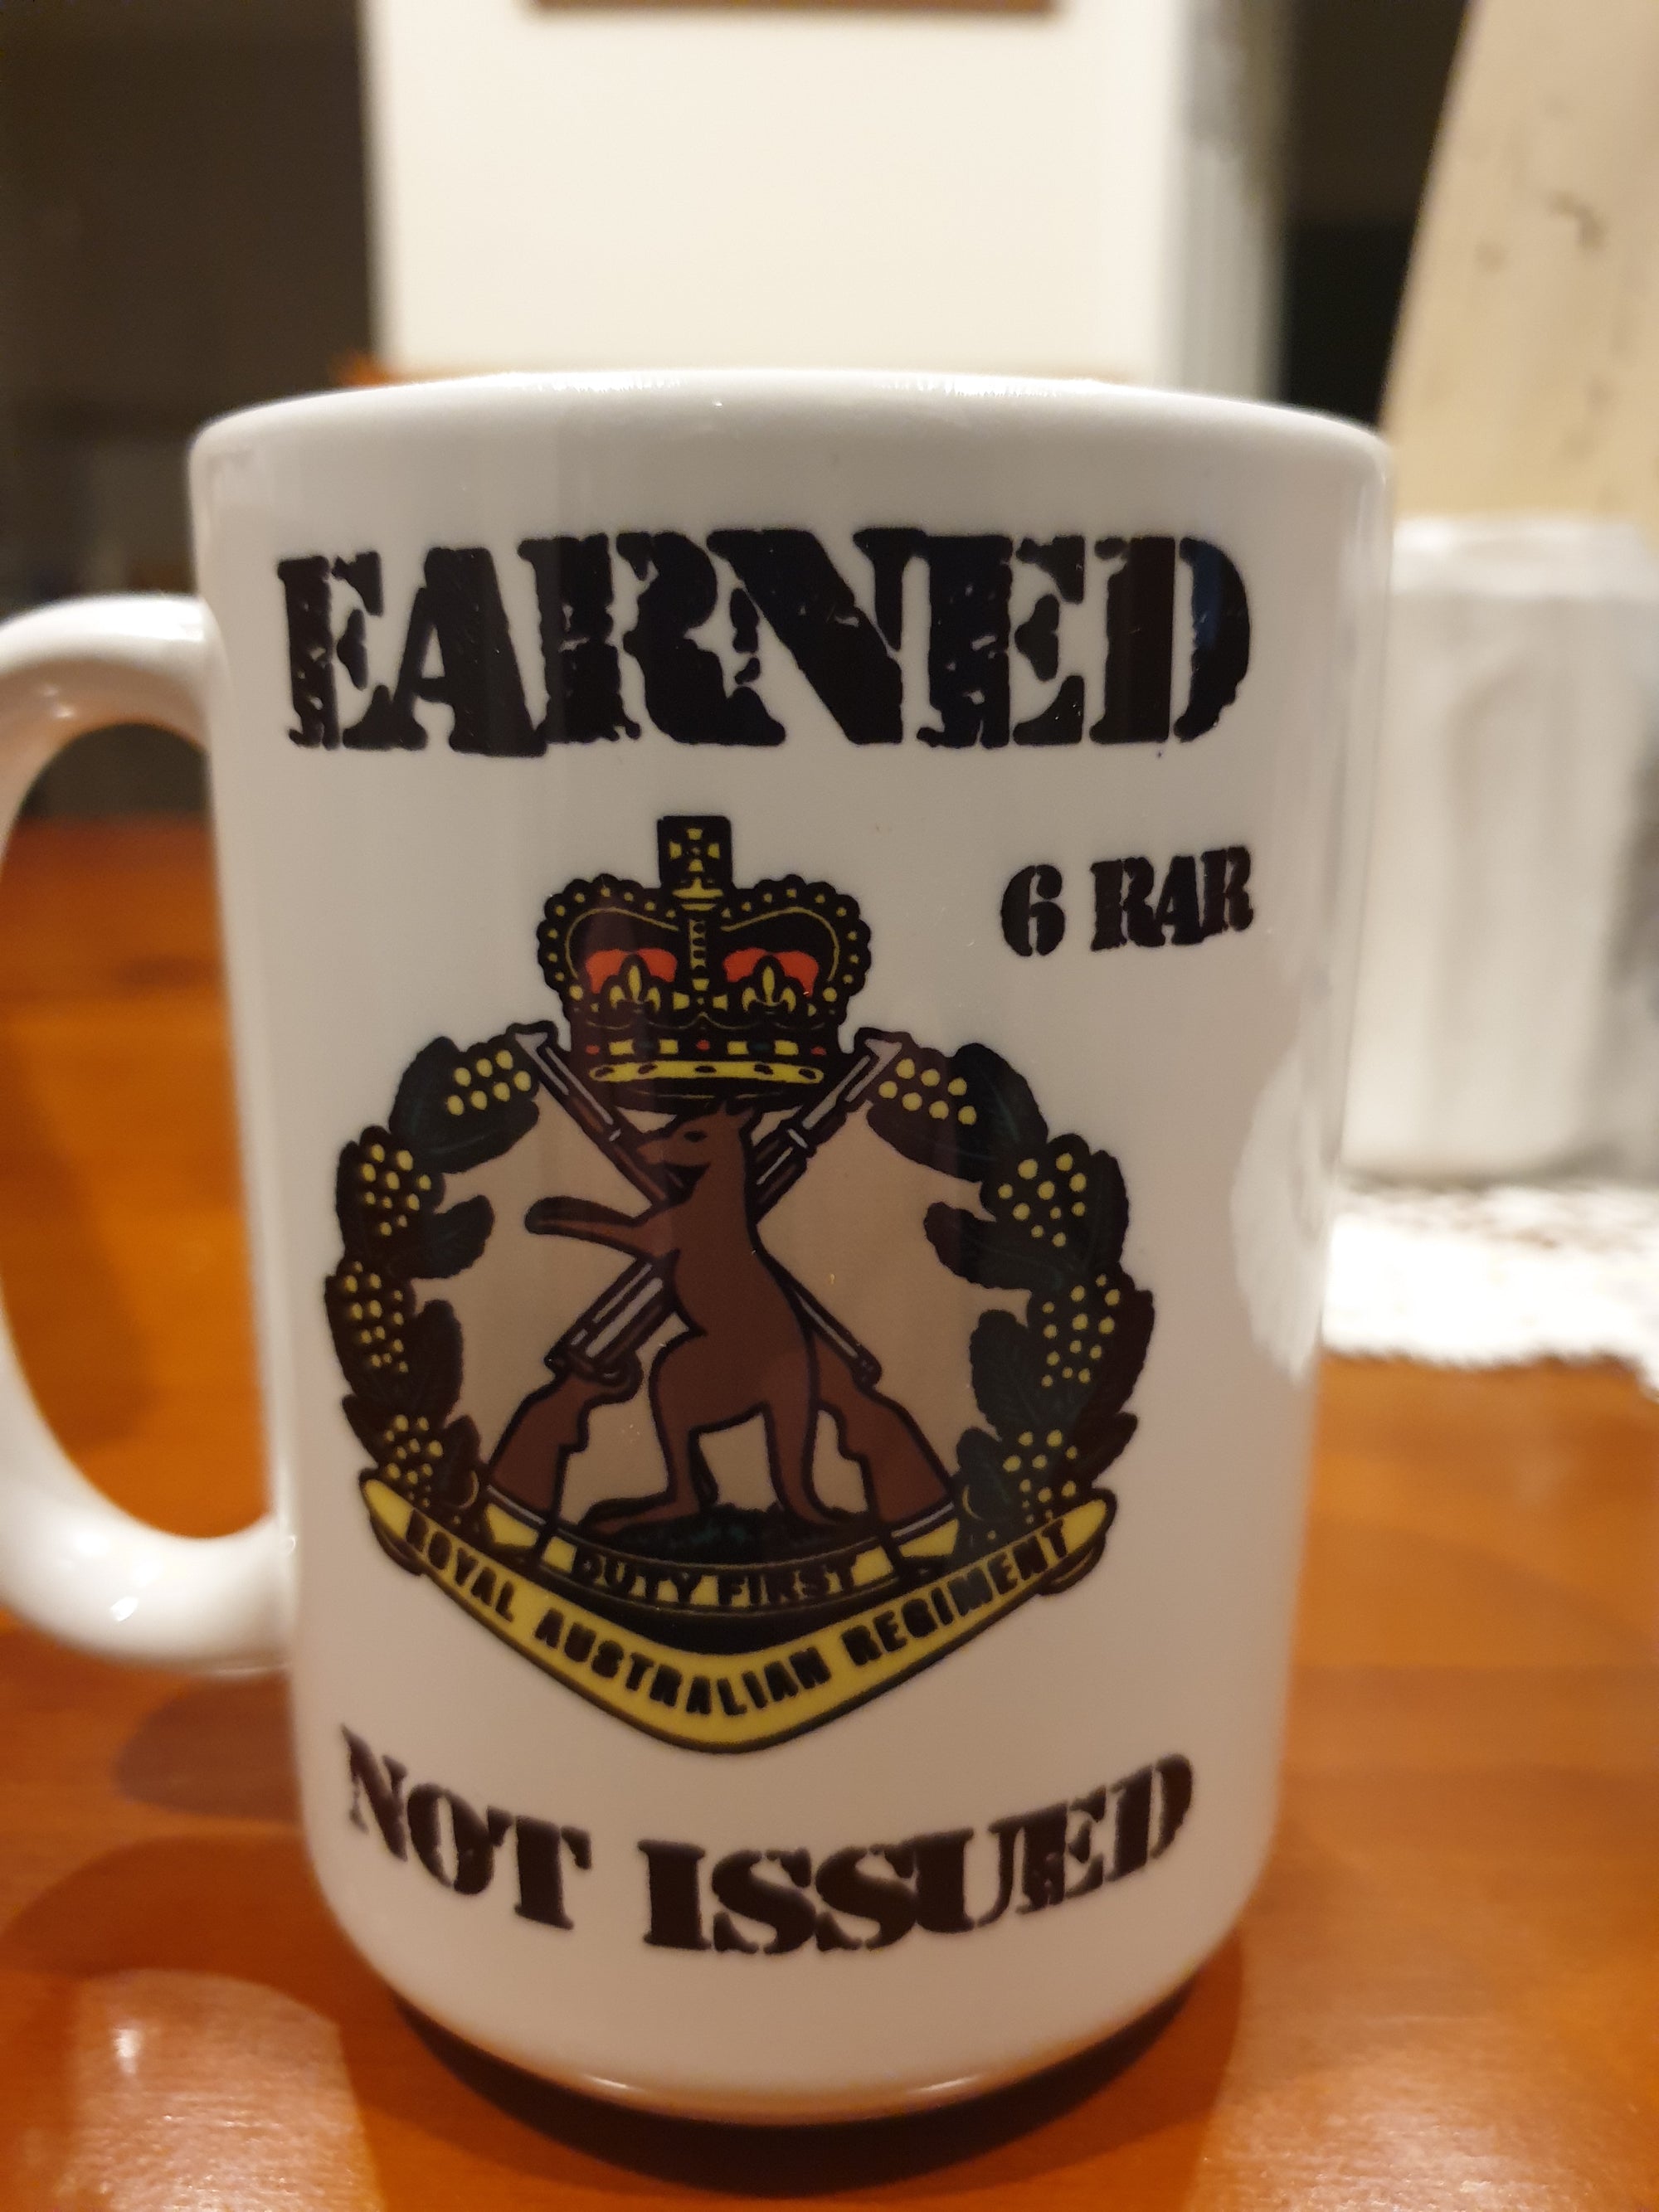 6 15 0Z  6 RAR Earned not issued  mug